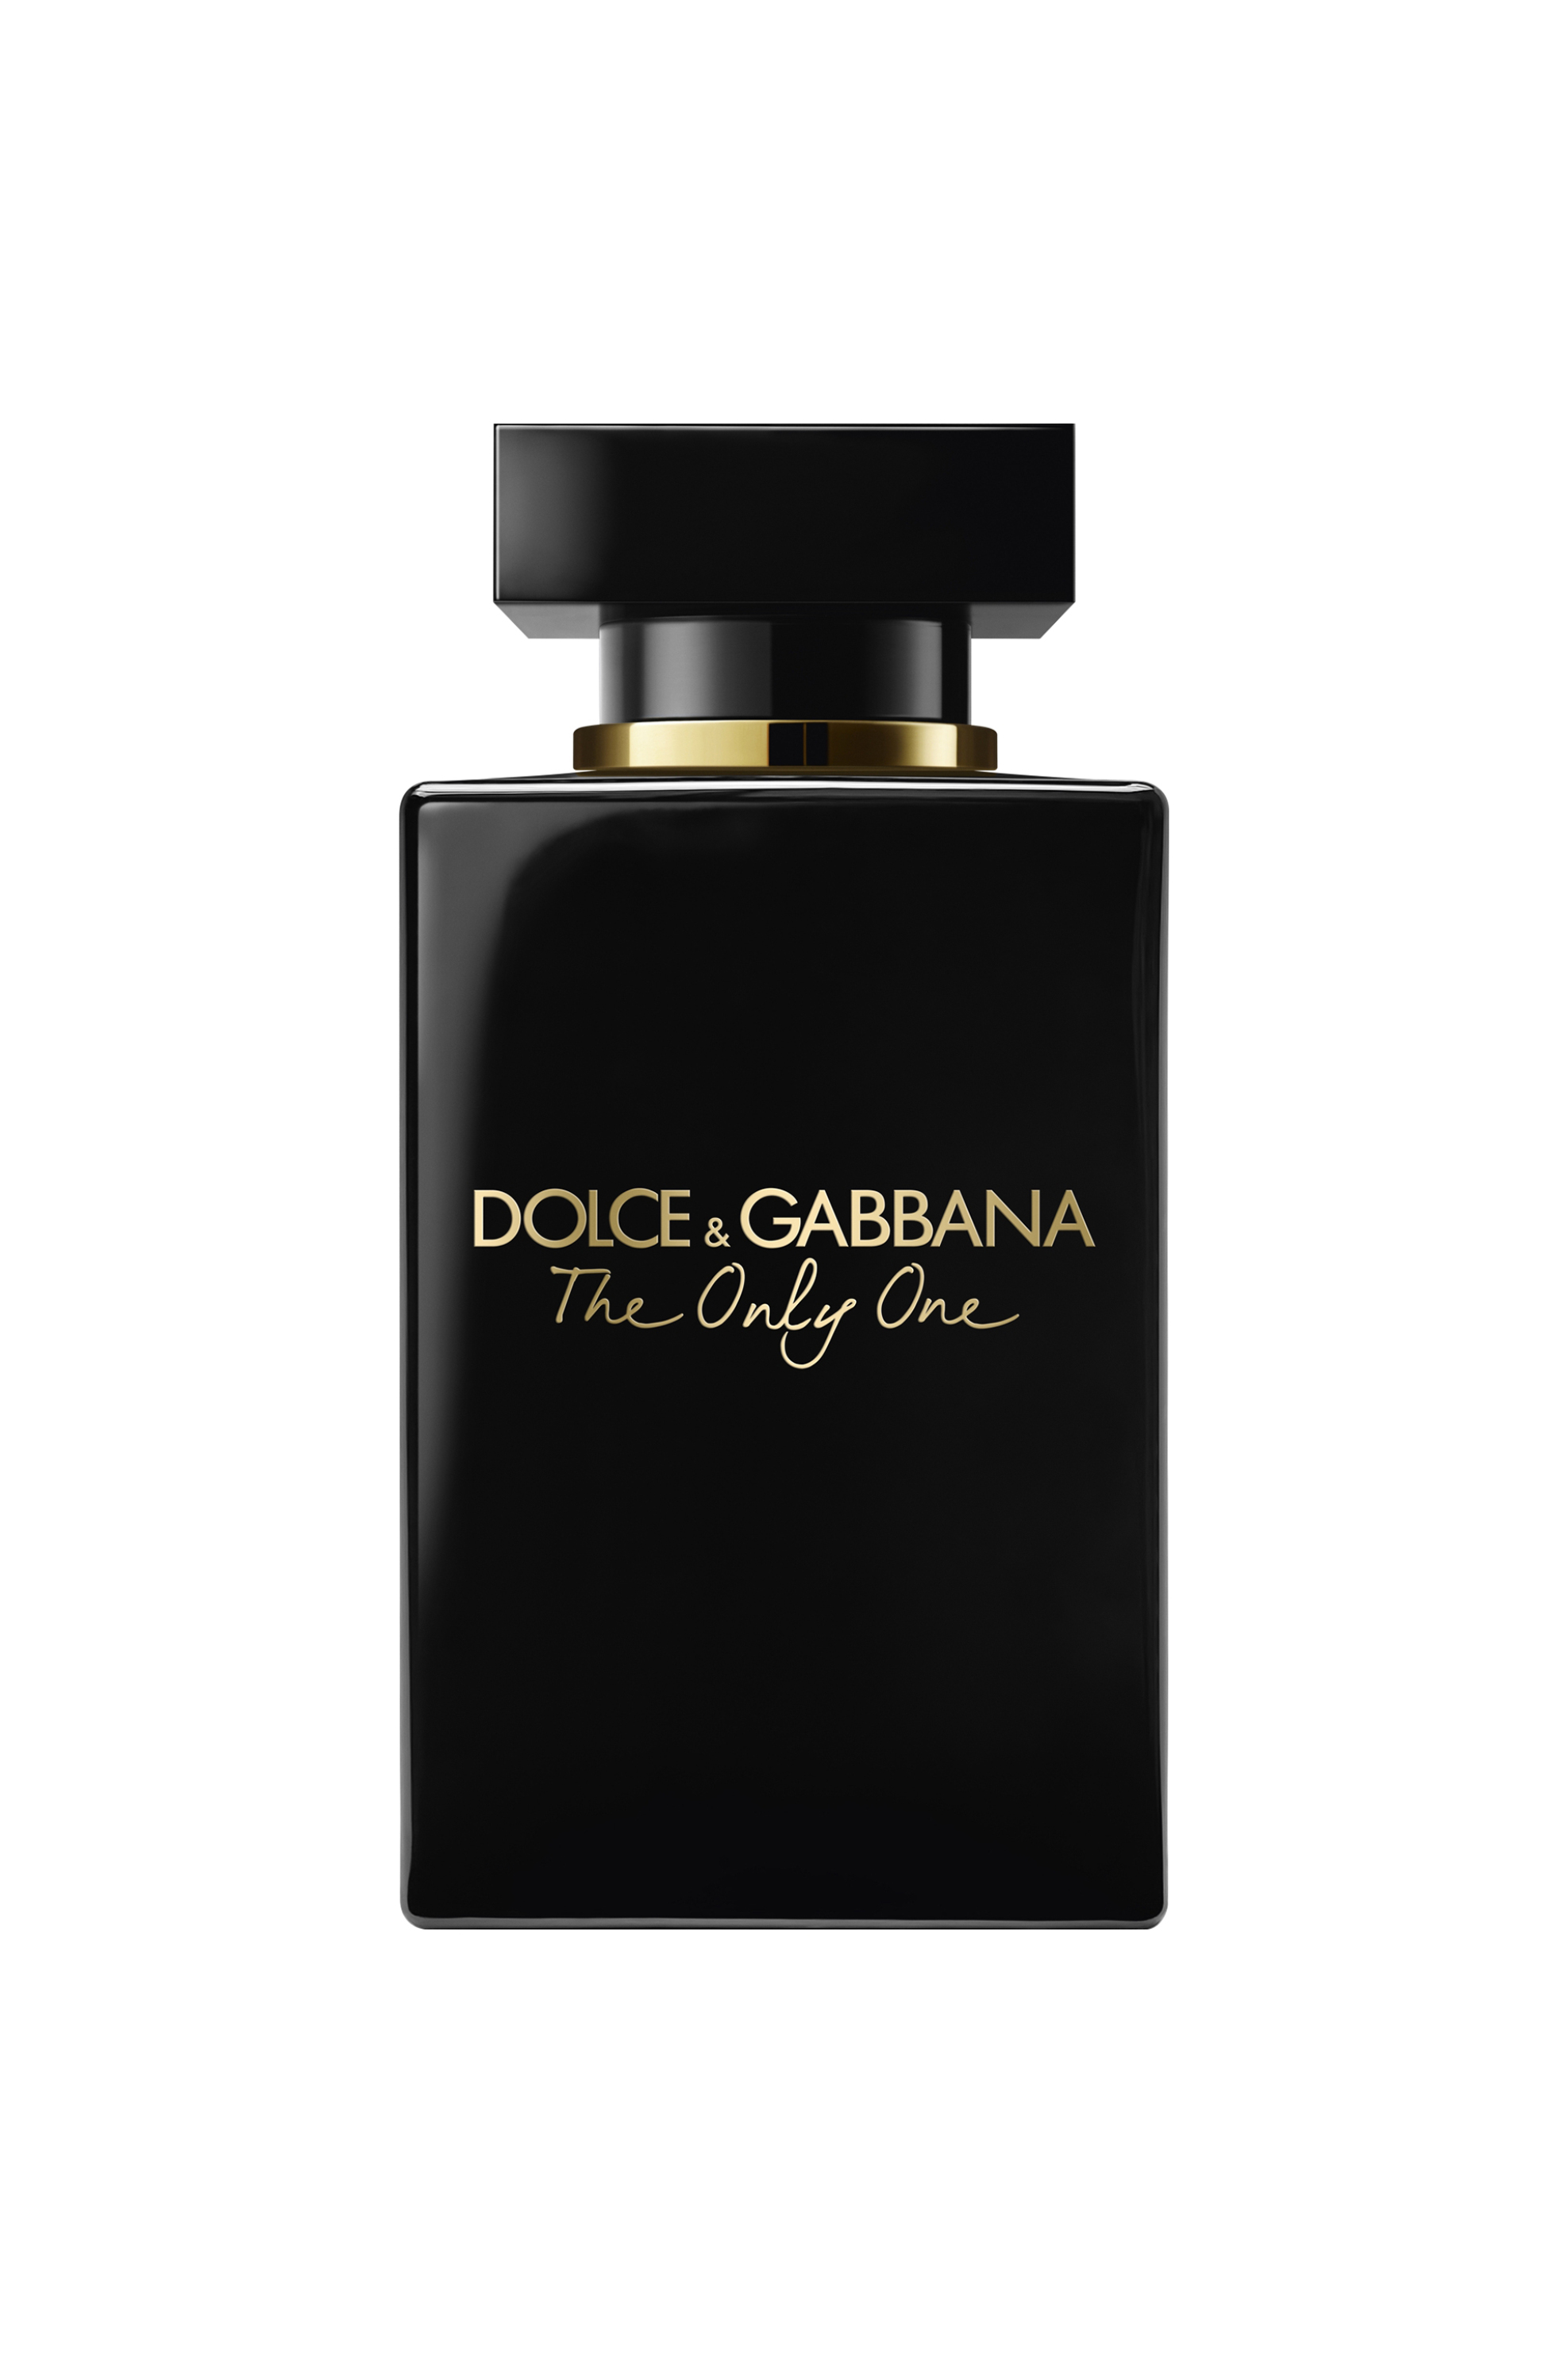 Ομορφιά > ΑΡΩΜΑΤΑ > Γυναικεία Αρώματα > Eau de Parfum - Parfum Dolce & Gabbana The Only One Eau de Parfum Intense - I89664500000